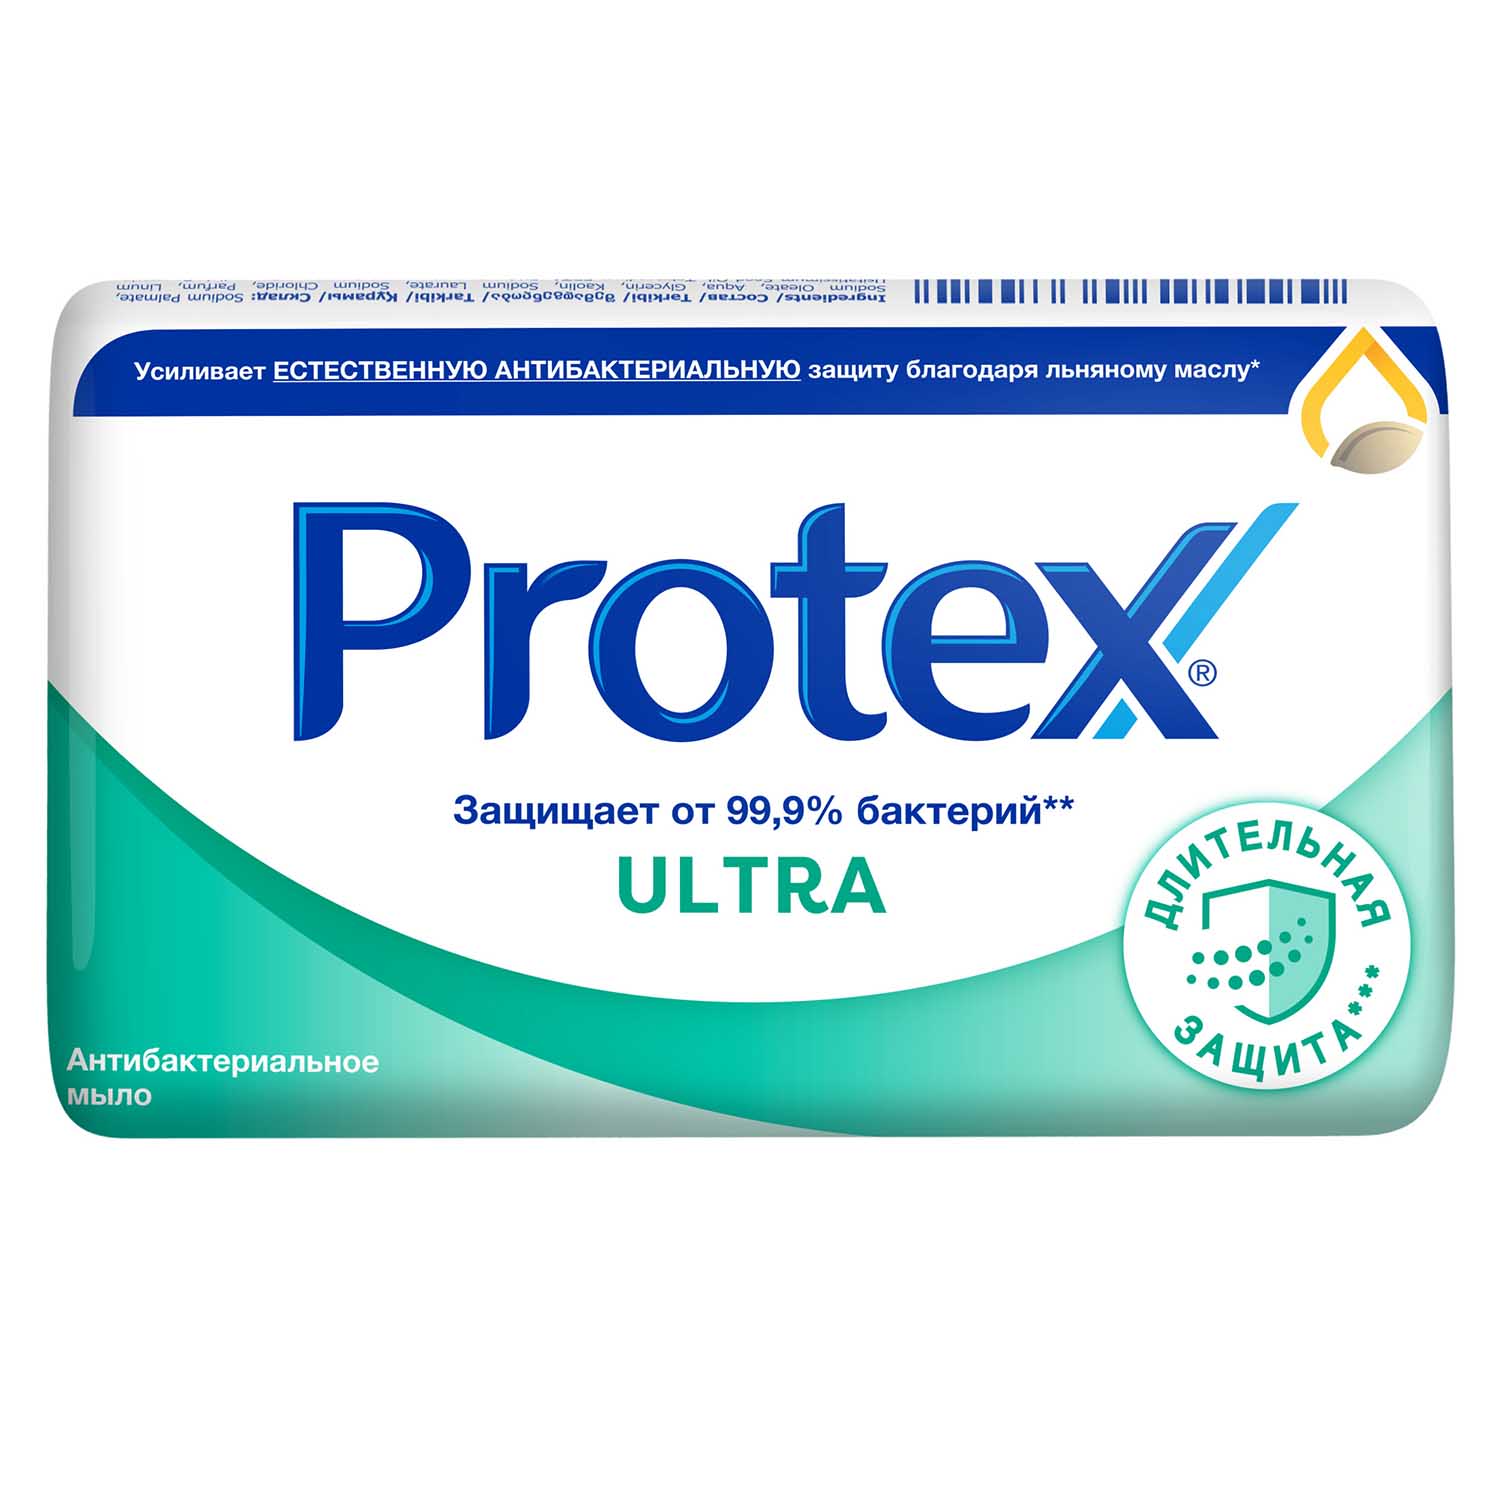 Мыло туалетное Protex Ultra Антибактериальное с льняным маслом, 90 гр